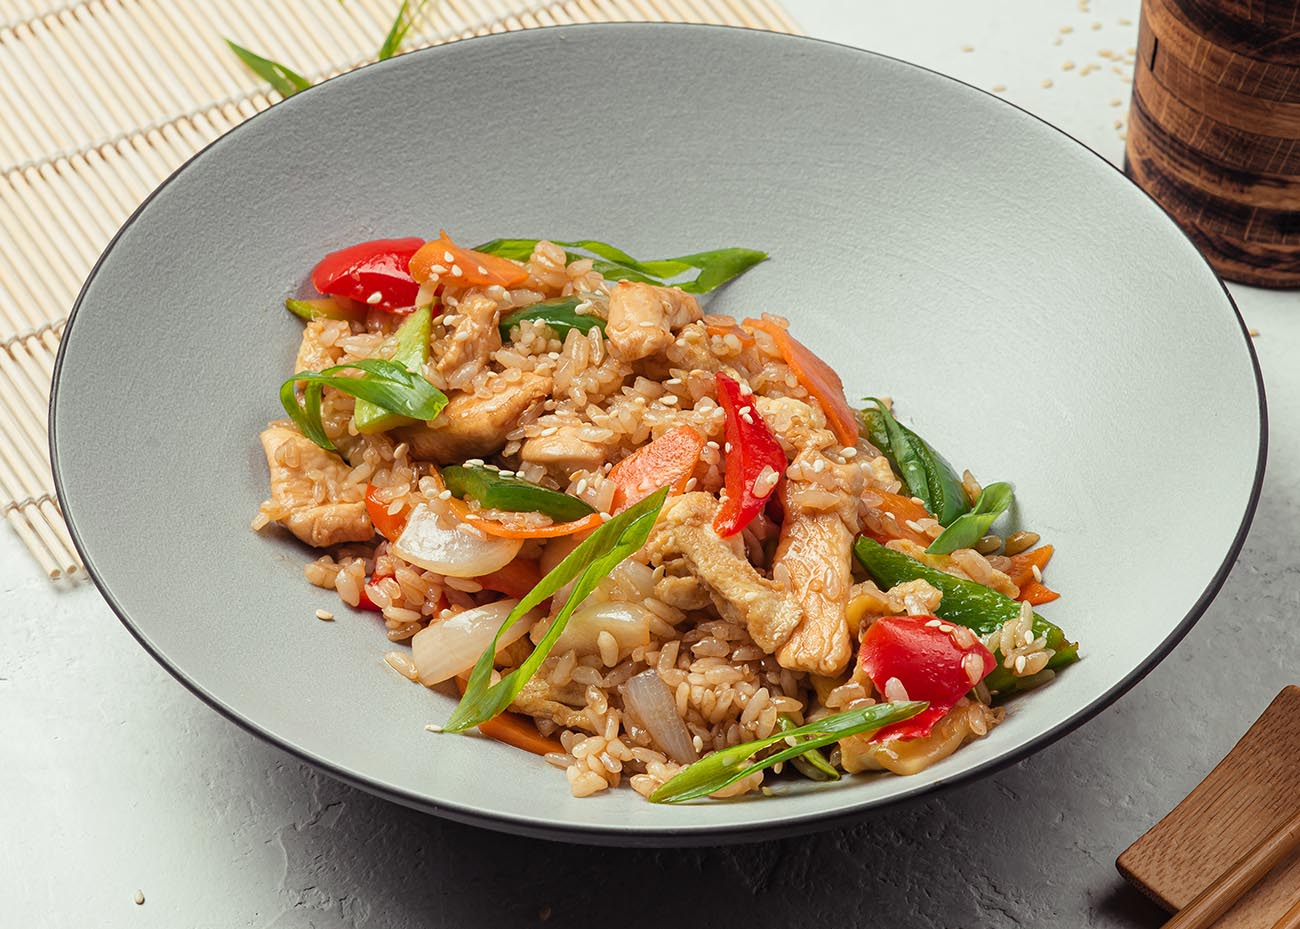 Рецепт блюда Курица терияки с рисом и овощами по шагам с фото и временем приготовления